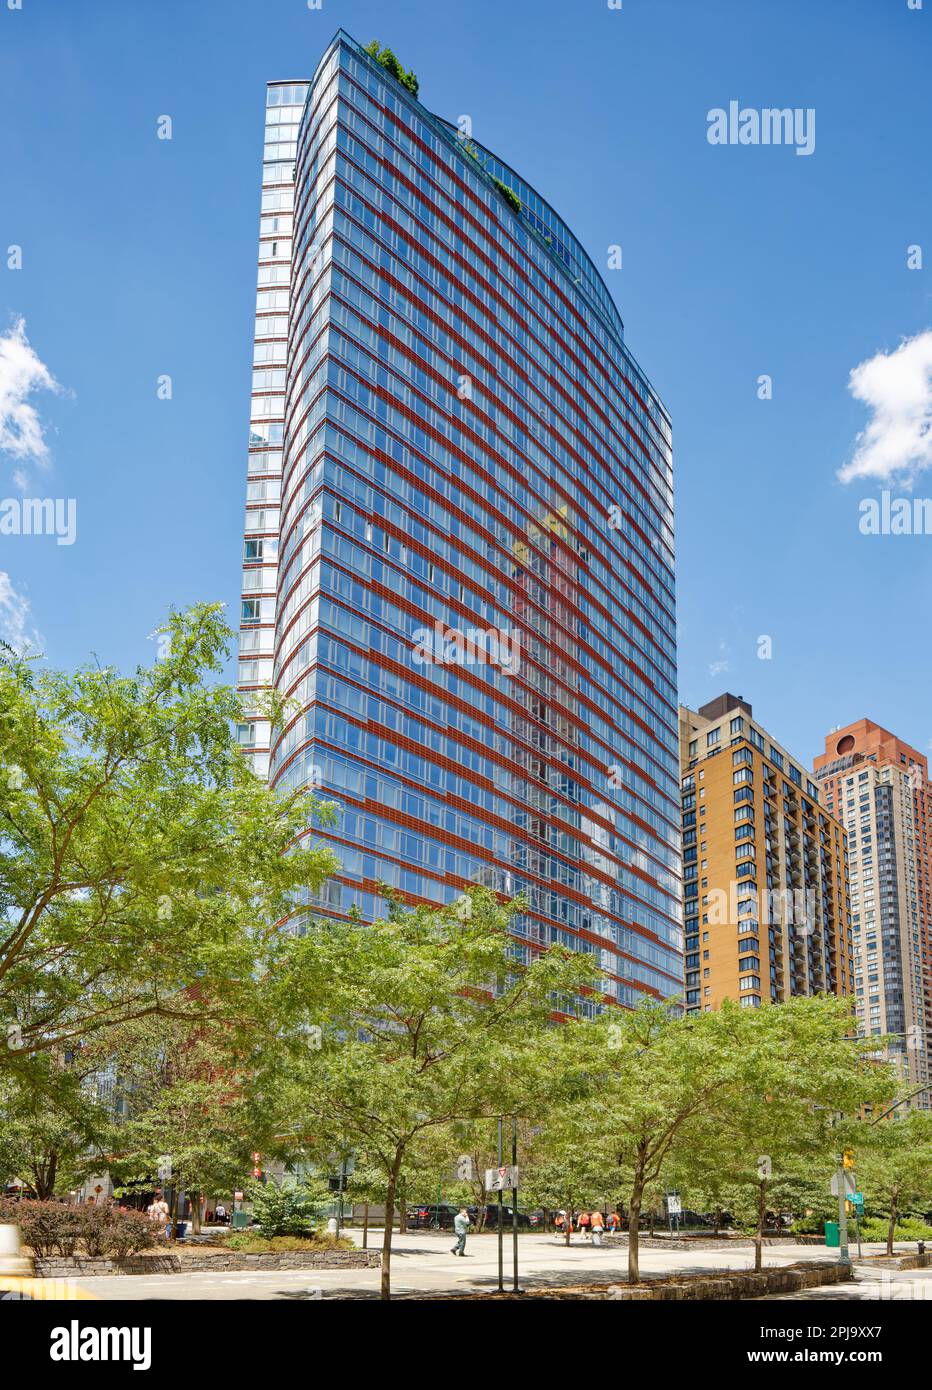 Visionaire est un immeuble d'habitation en copropriété situé dans Battery Park City avec une façade en verre incurvée distinctive accentuée par des bandes horizontales rouges. Banque D'Images